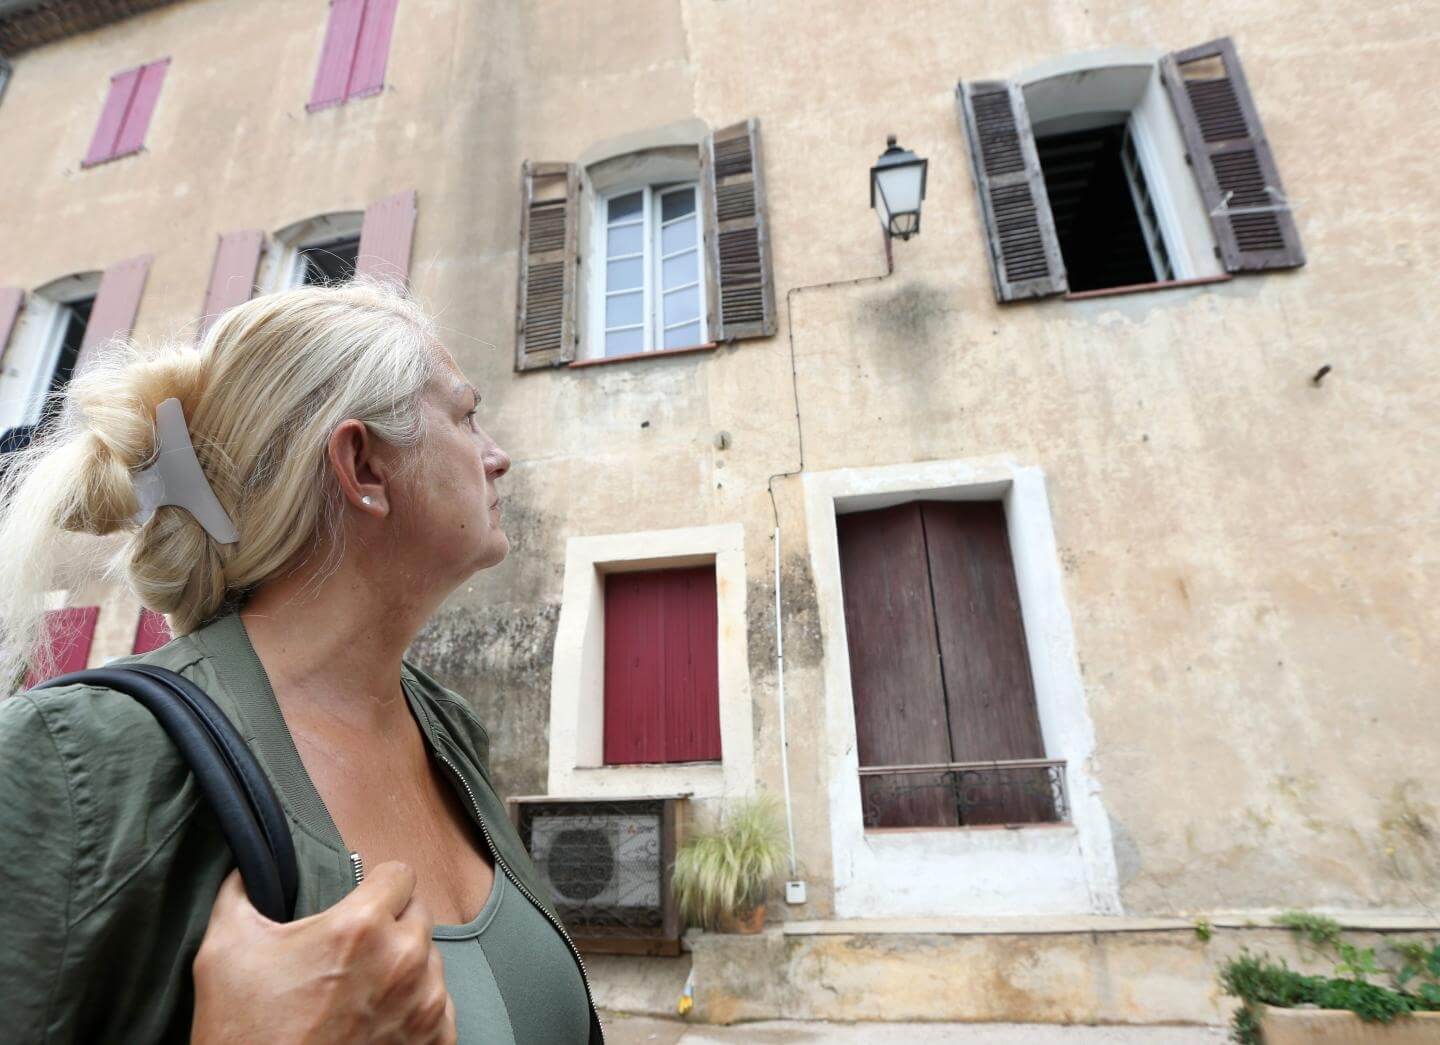 Médias : À 51 ans, Nadine devient sans domicile fixe à cause de mauvais payeurs